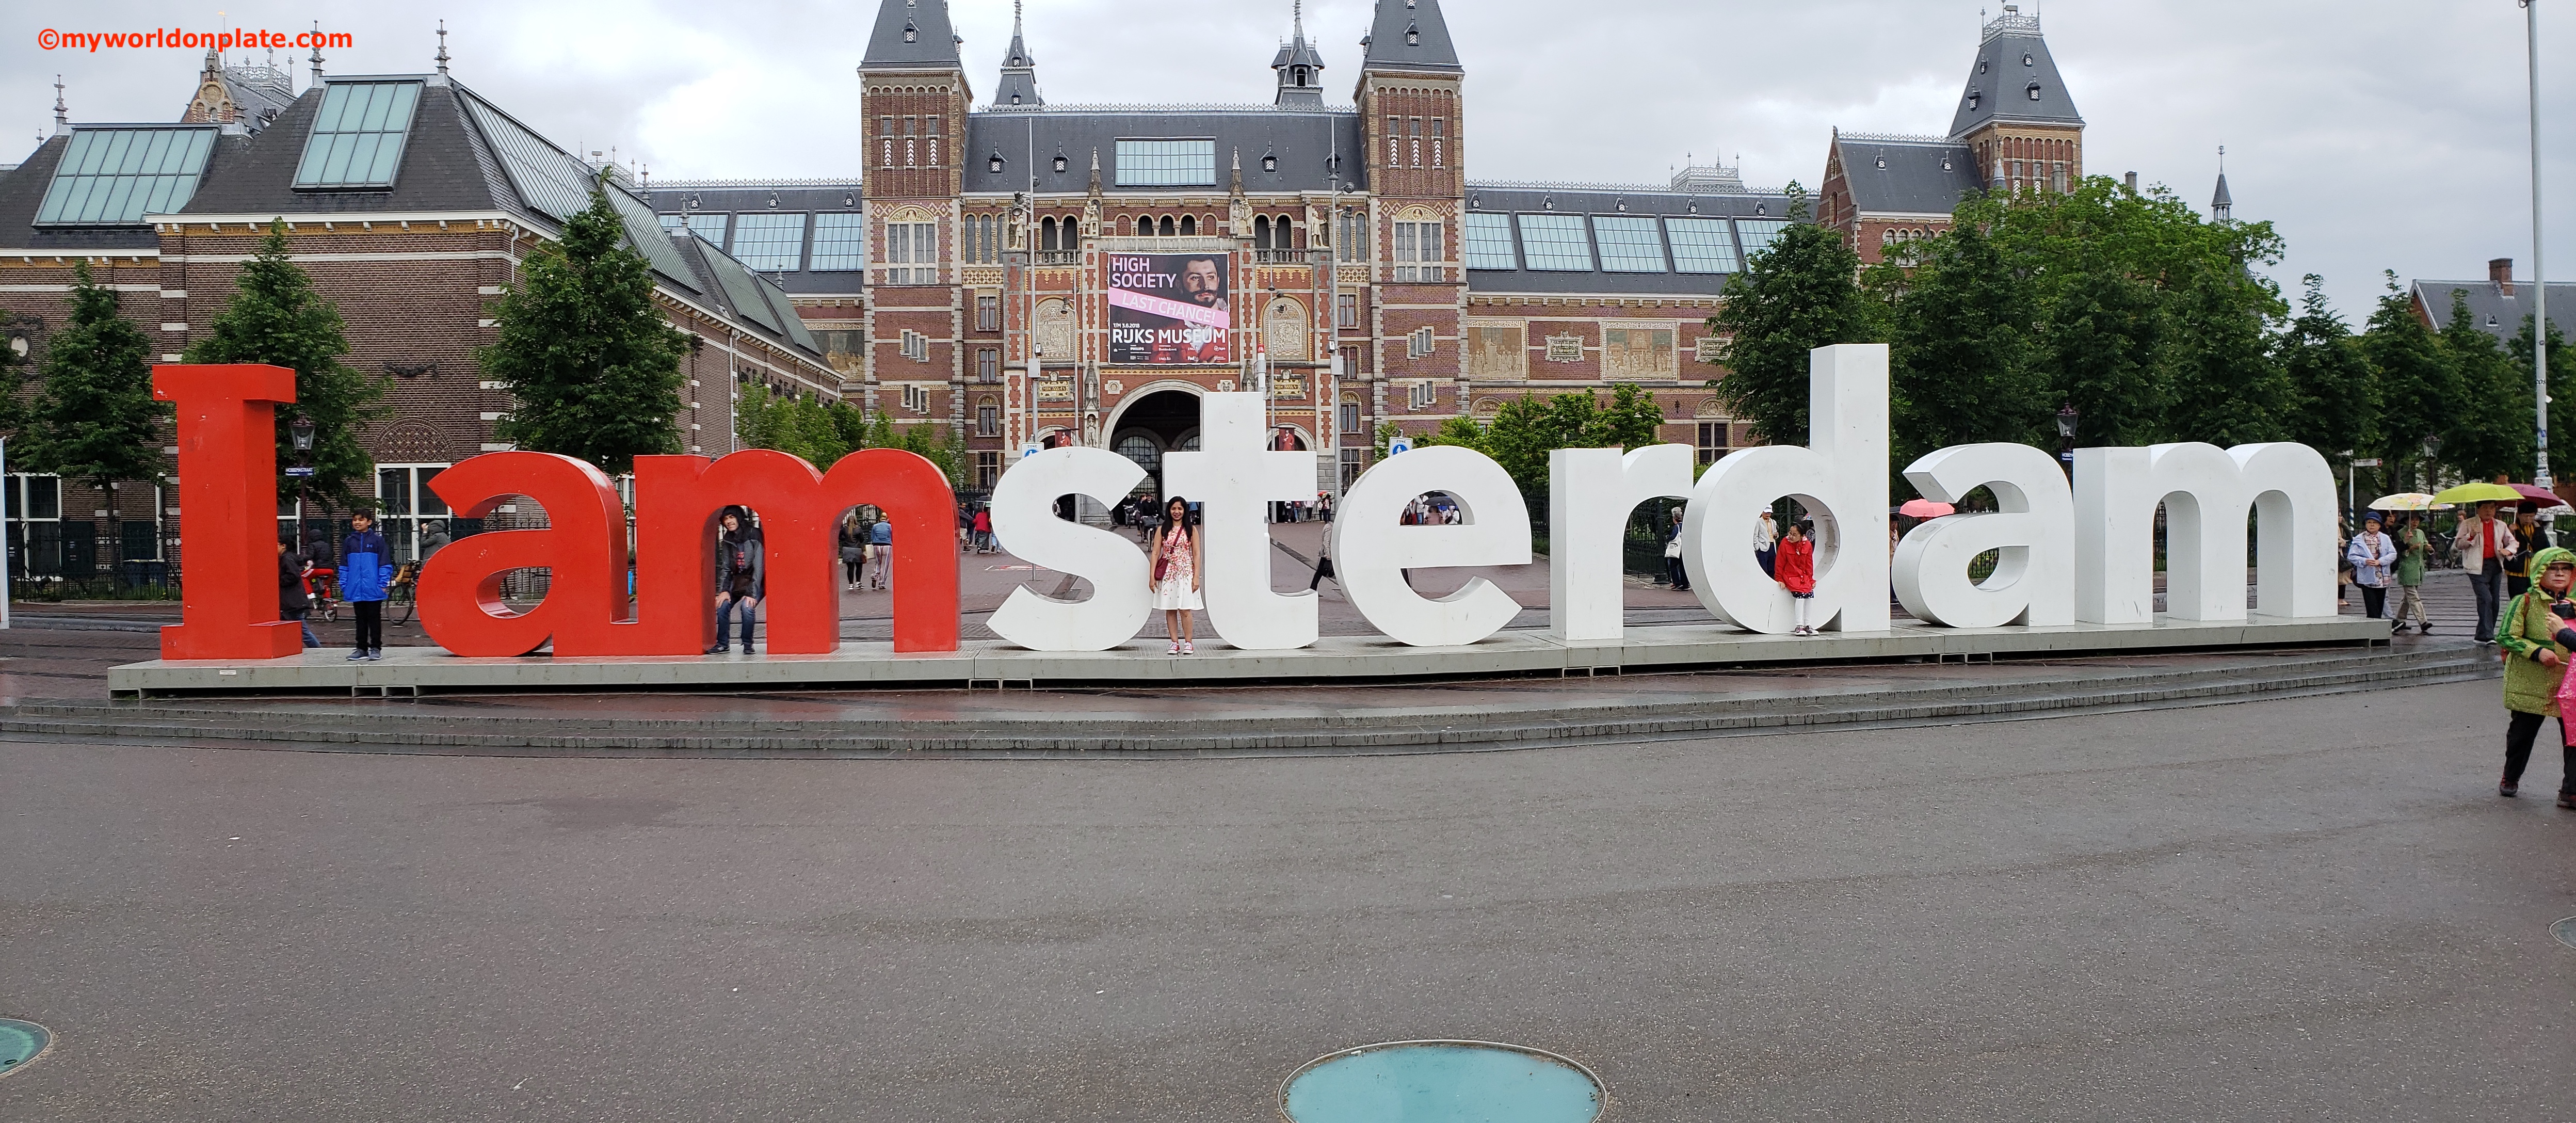 Iconic I Amsterdam